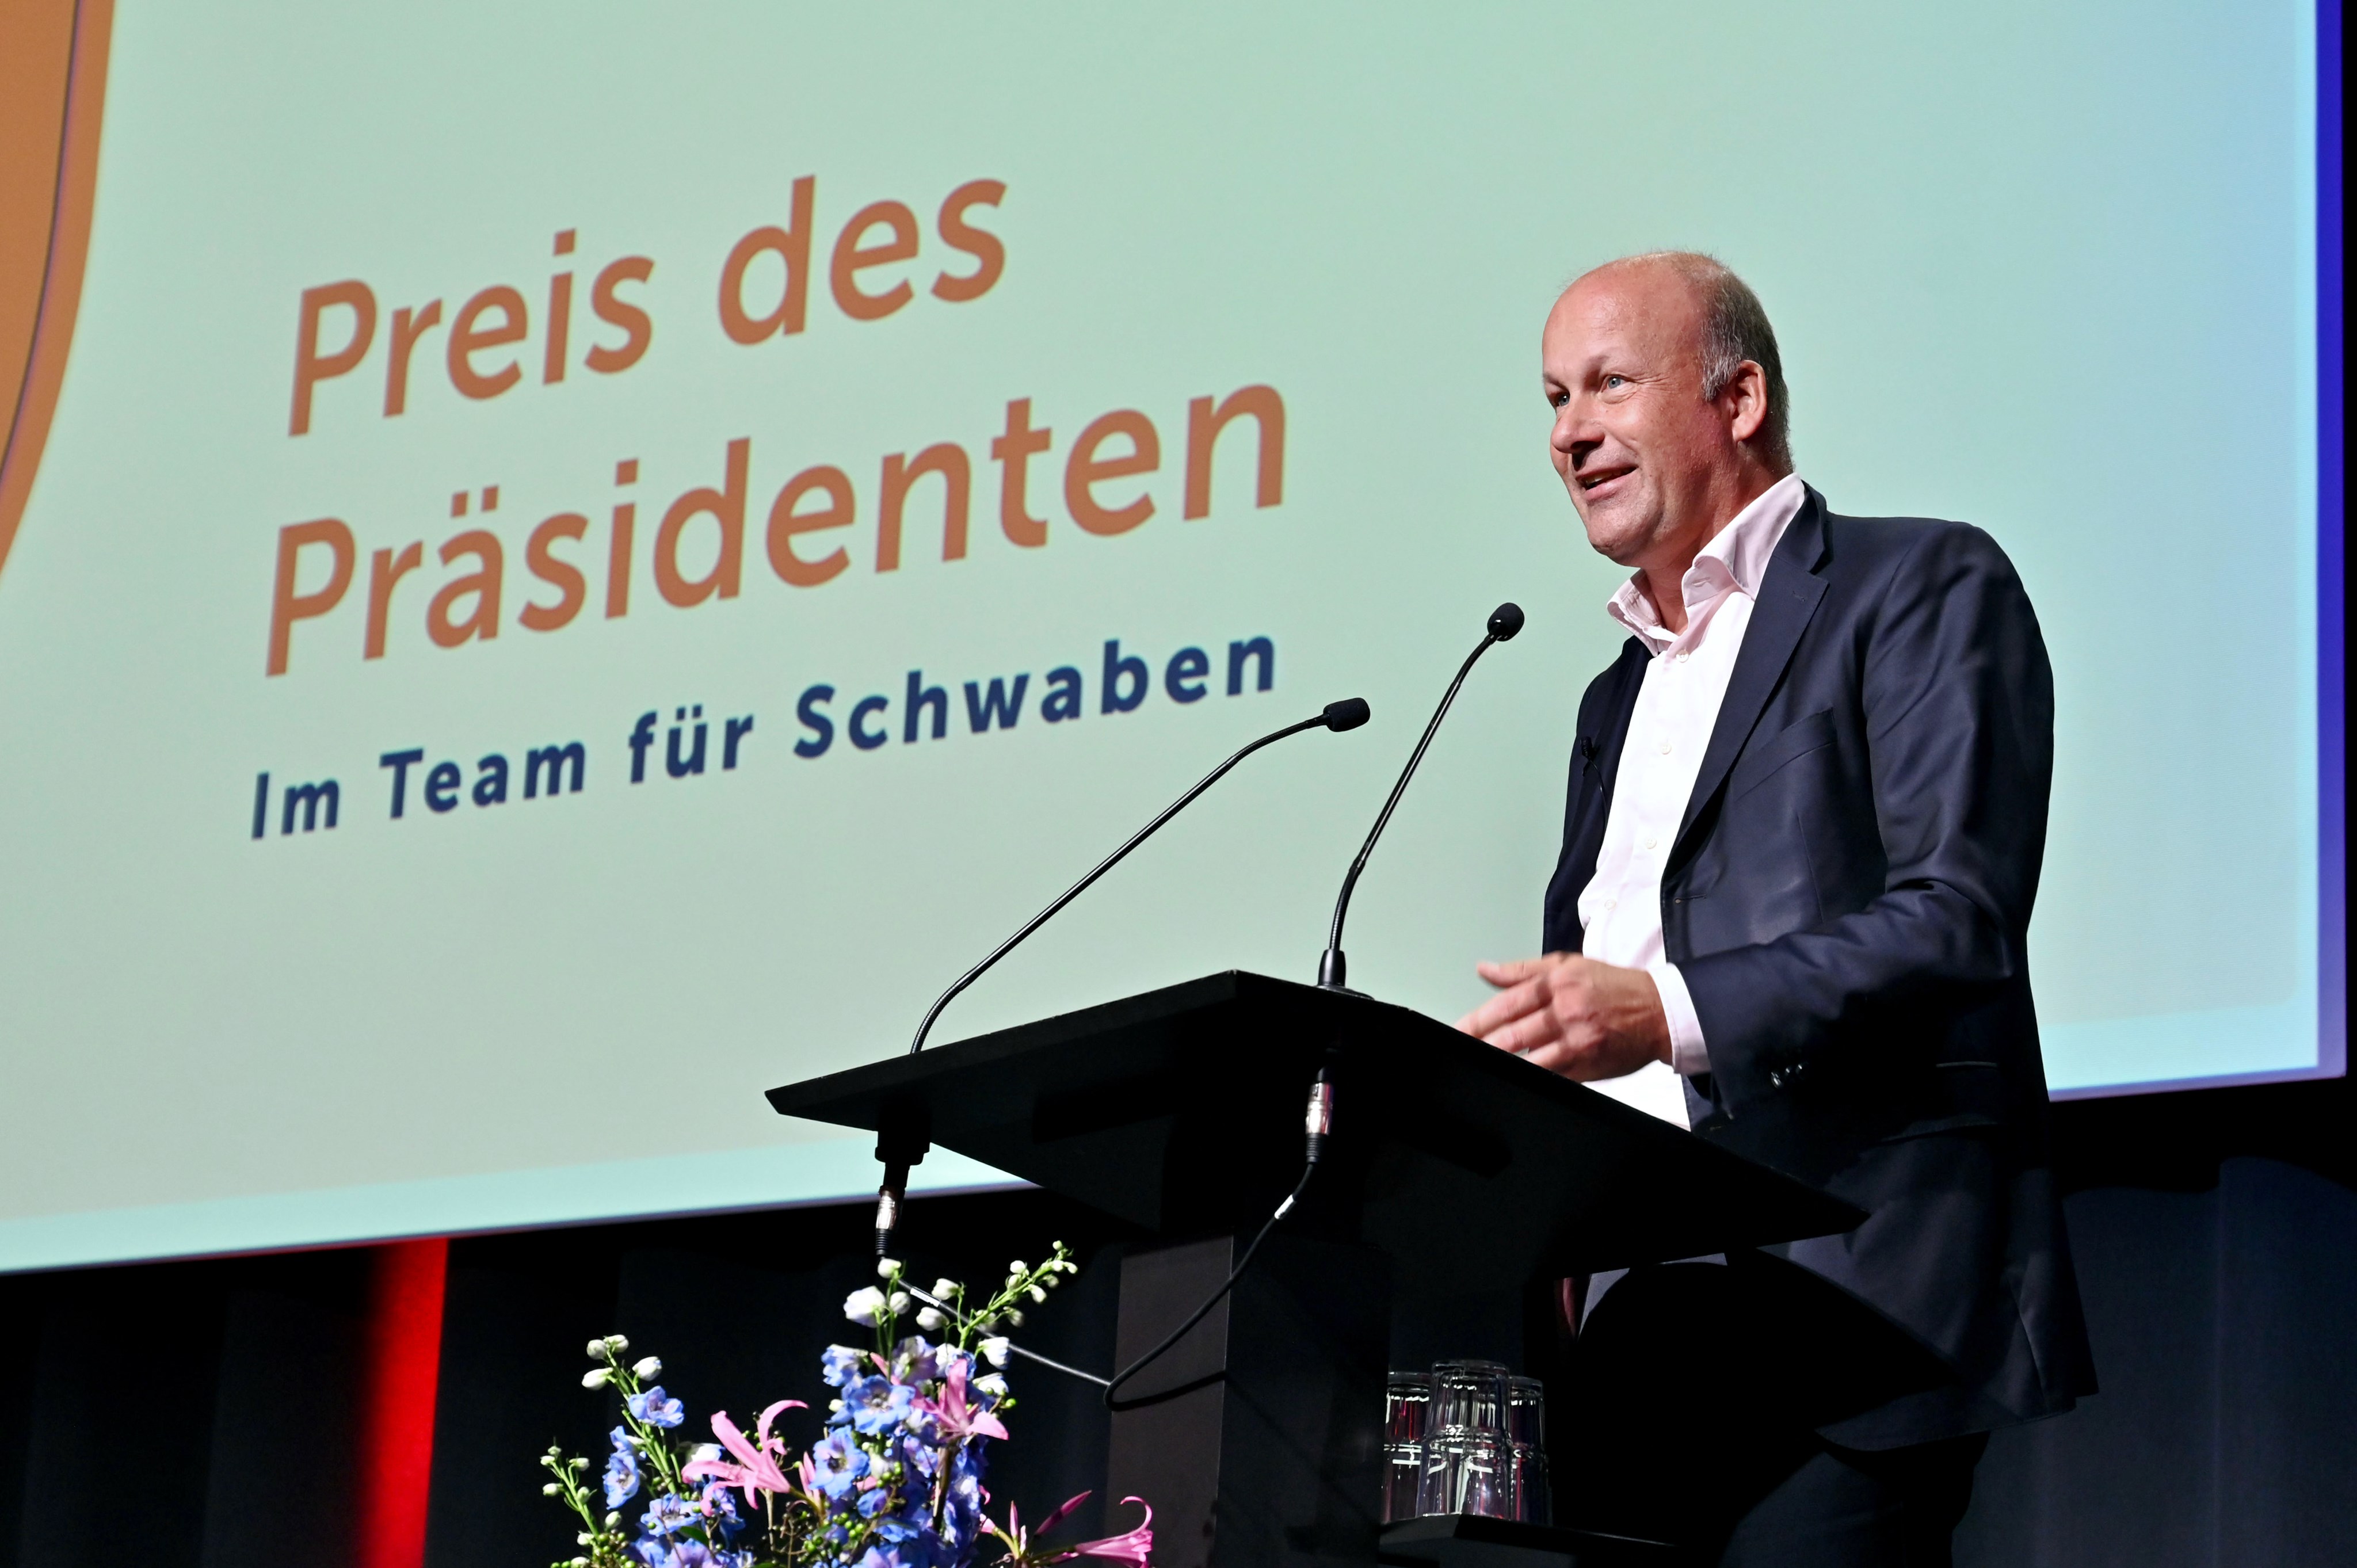 Bezirkstagspräsident Martin Sailer am Rednerpult bei der Preisverleihung Preis des Präsidenten 2023.